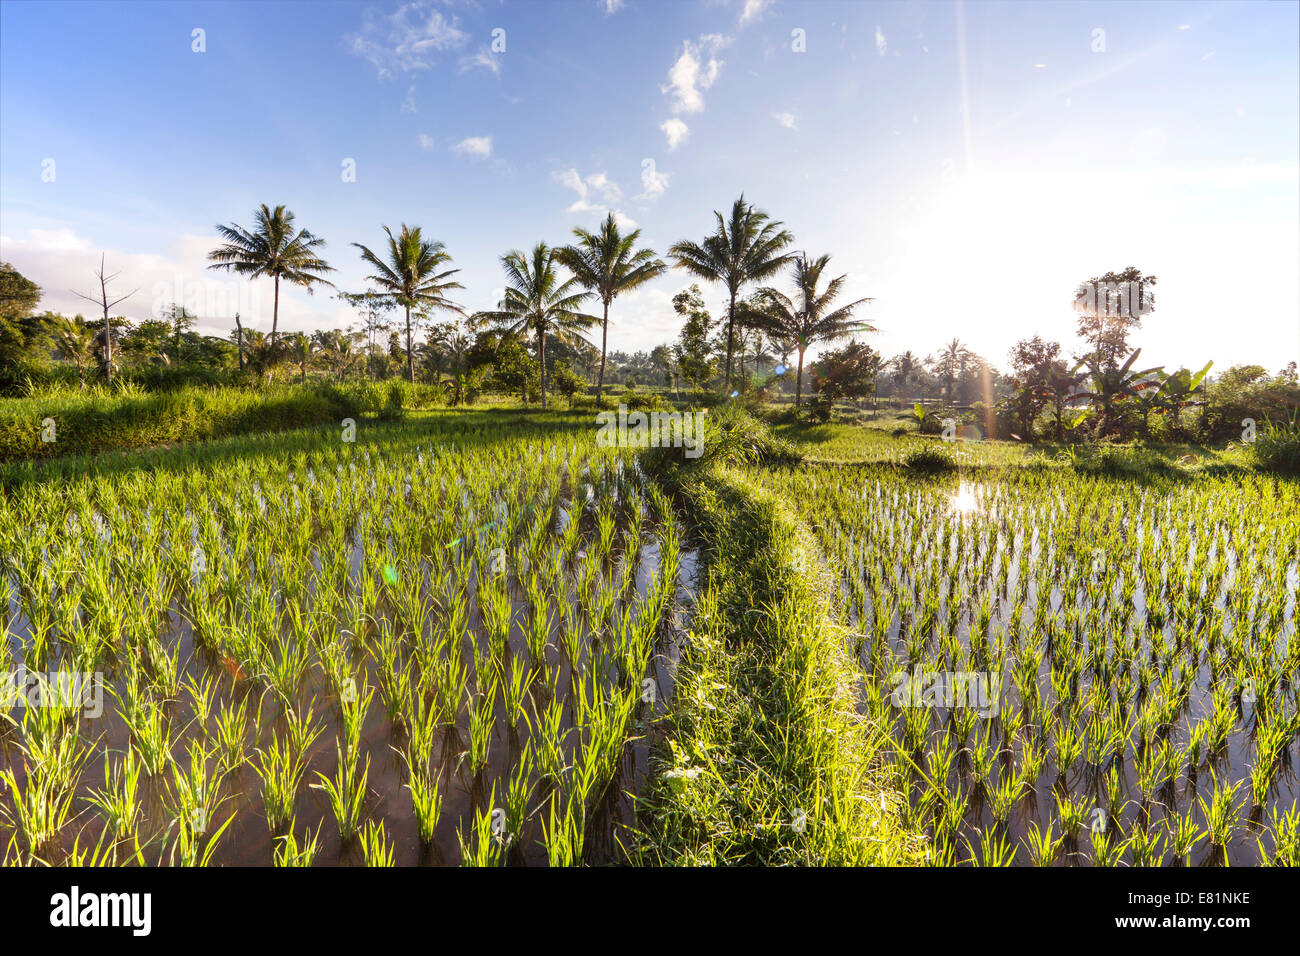 Champ de riz avec palmiers, Terara, île de Lombok, Province de Nusa Tenggara Barat, Indonésie Banque D'Images